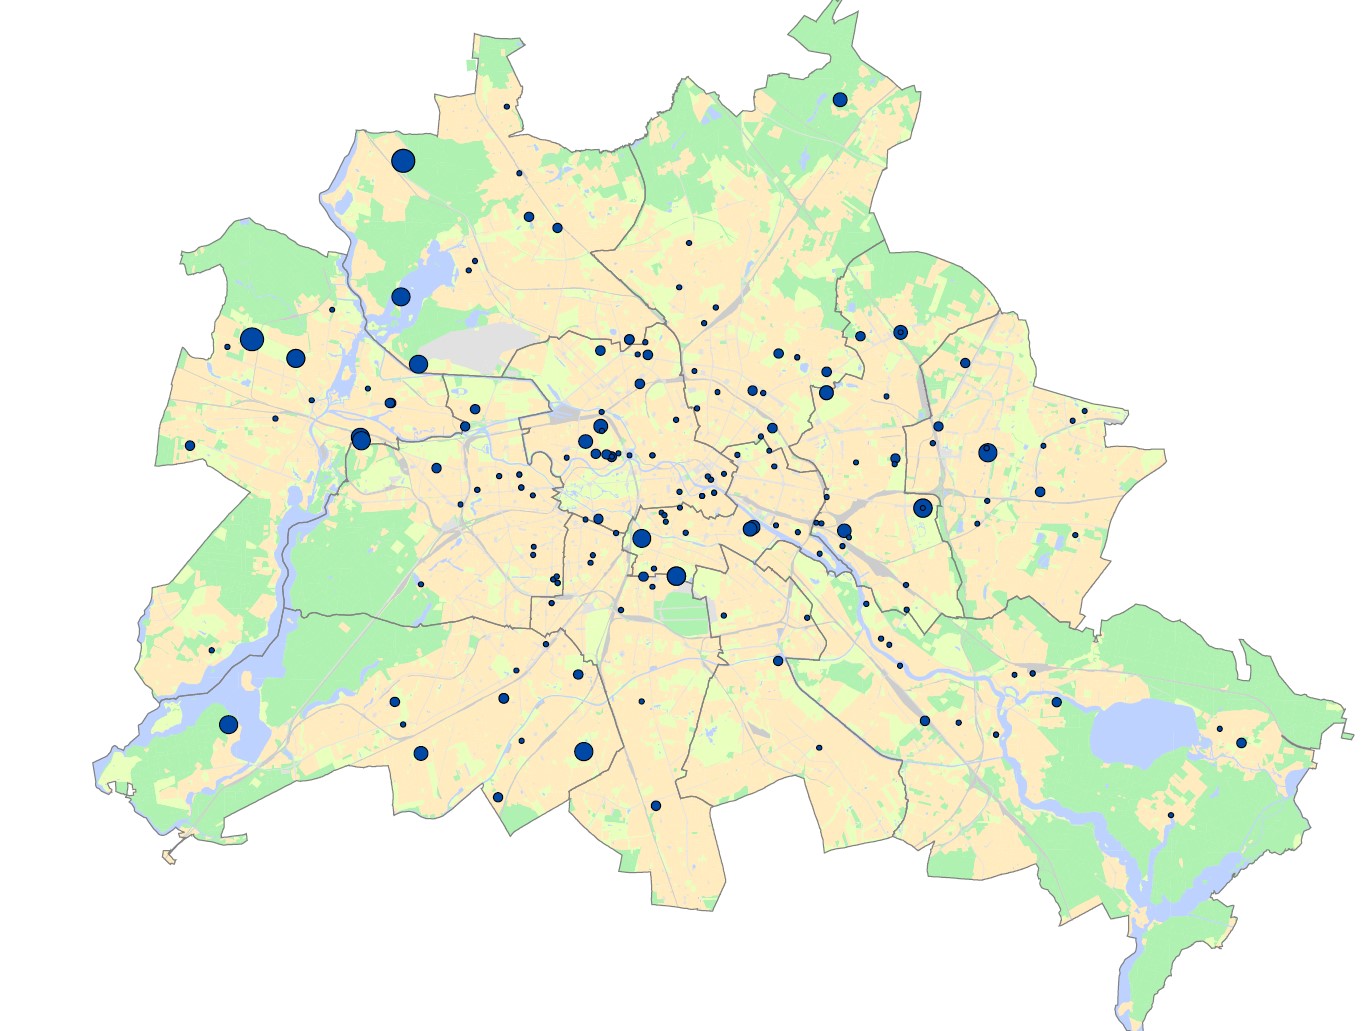 Grundstückspotenzialanalysen zur Nachverdichtung von landeseigenen Grundstücken im Land Berlin (seit 2013 etwa 200 Studien)